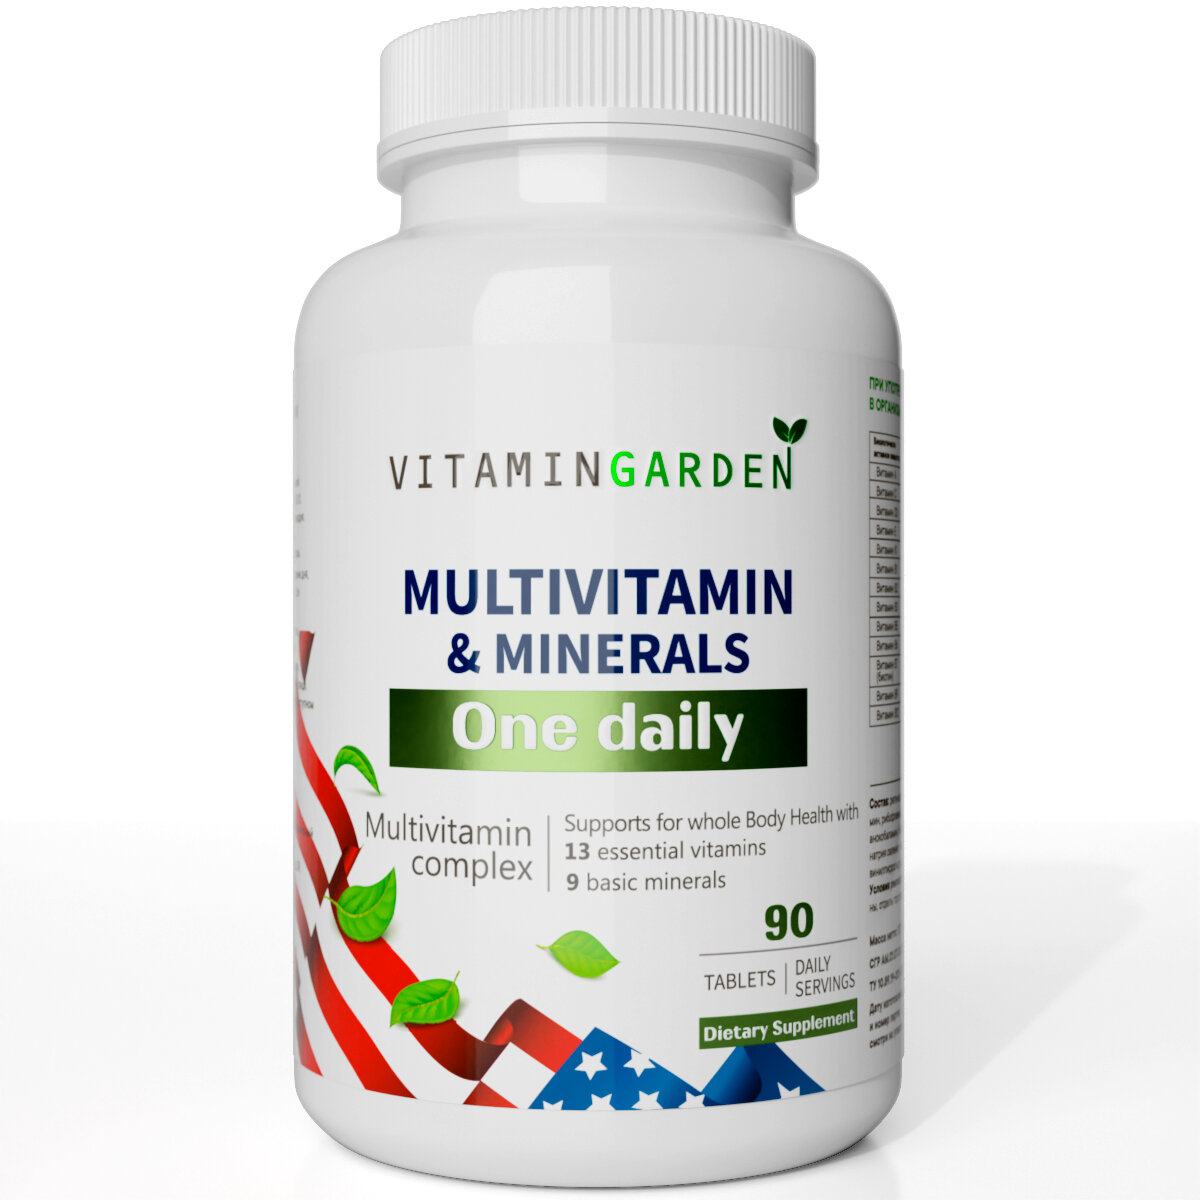 Мультивитамины для иммунитета мужчин женщин и подростков (90 таблеток)